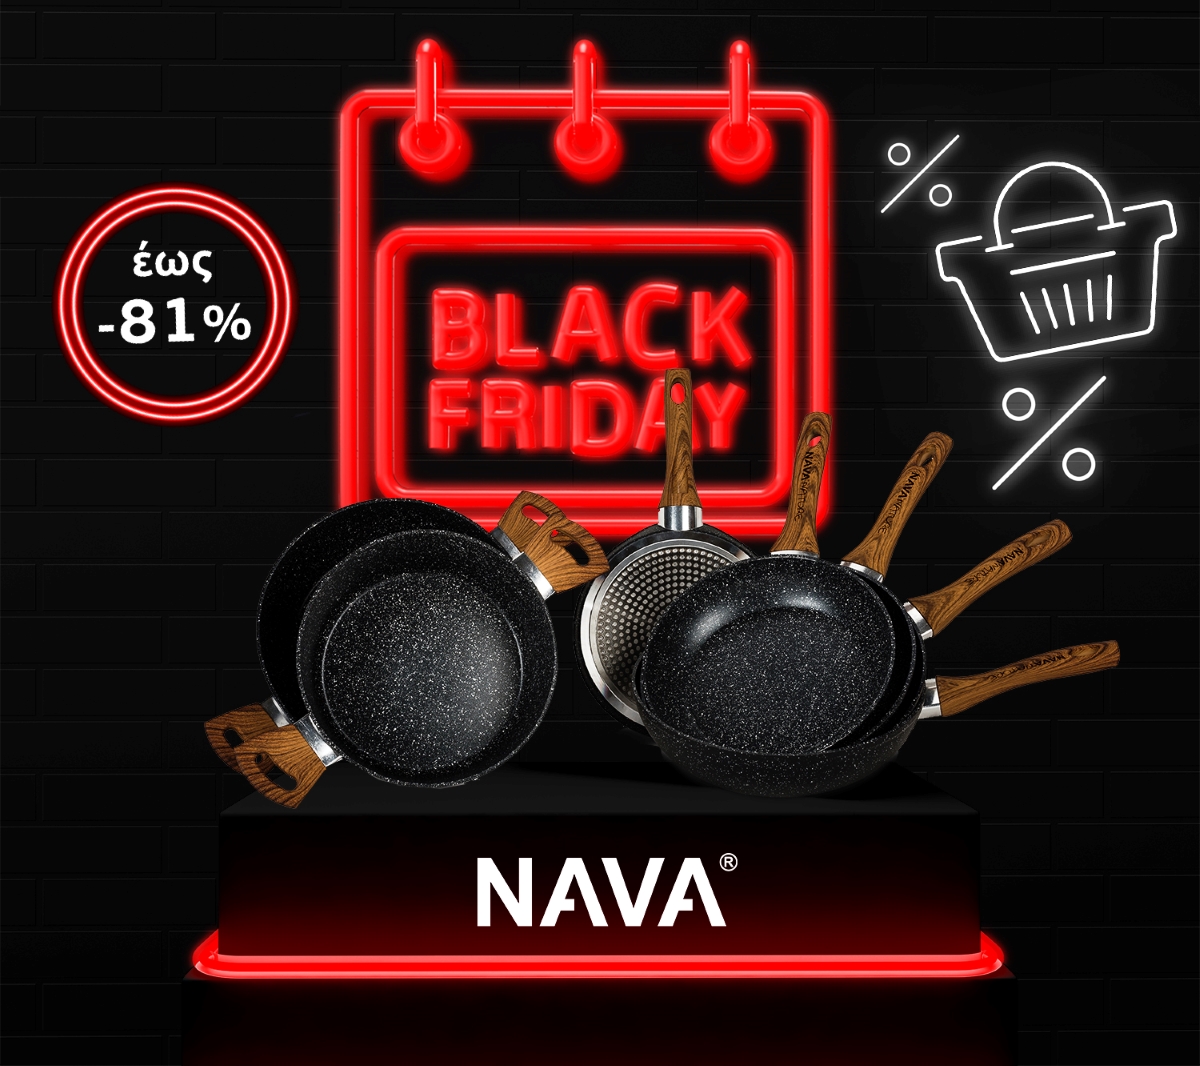 The BLACKFRIDAY WEEK shines brightly at NAVA!